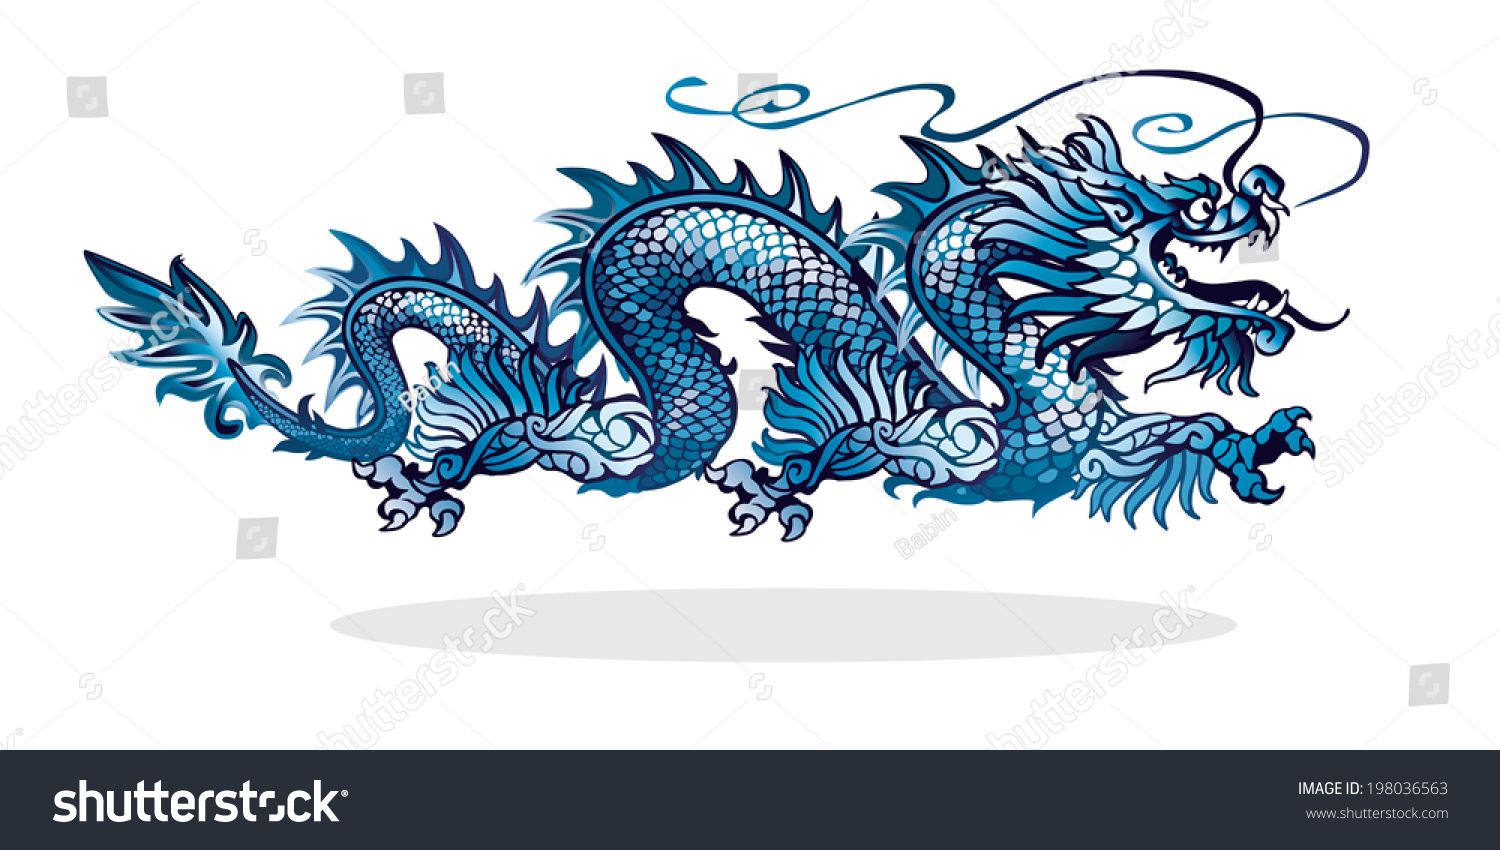 Китайский дракон голубой на белом фоне